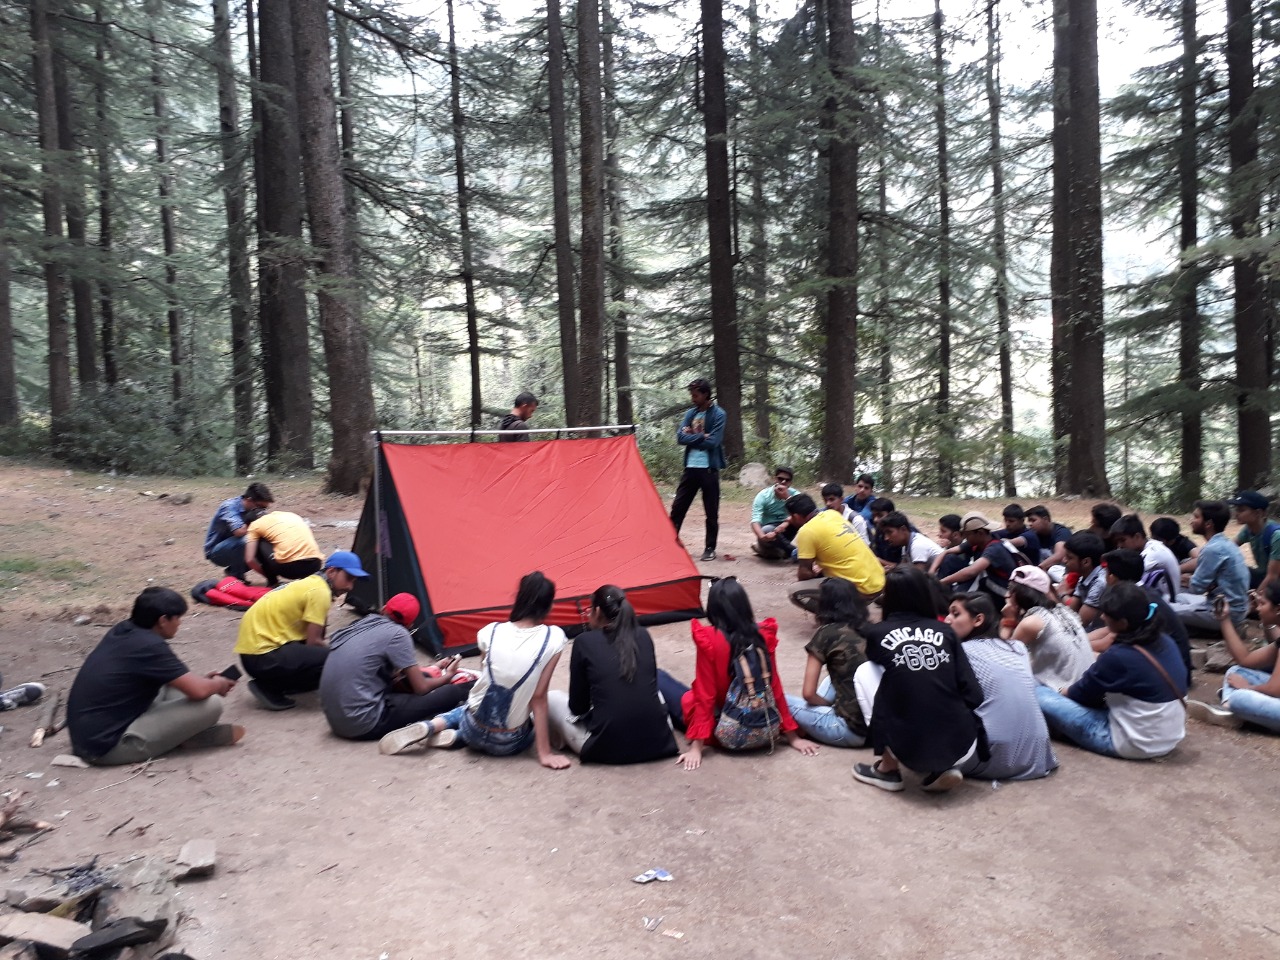 adventure camp